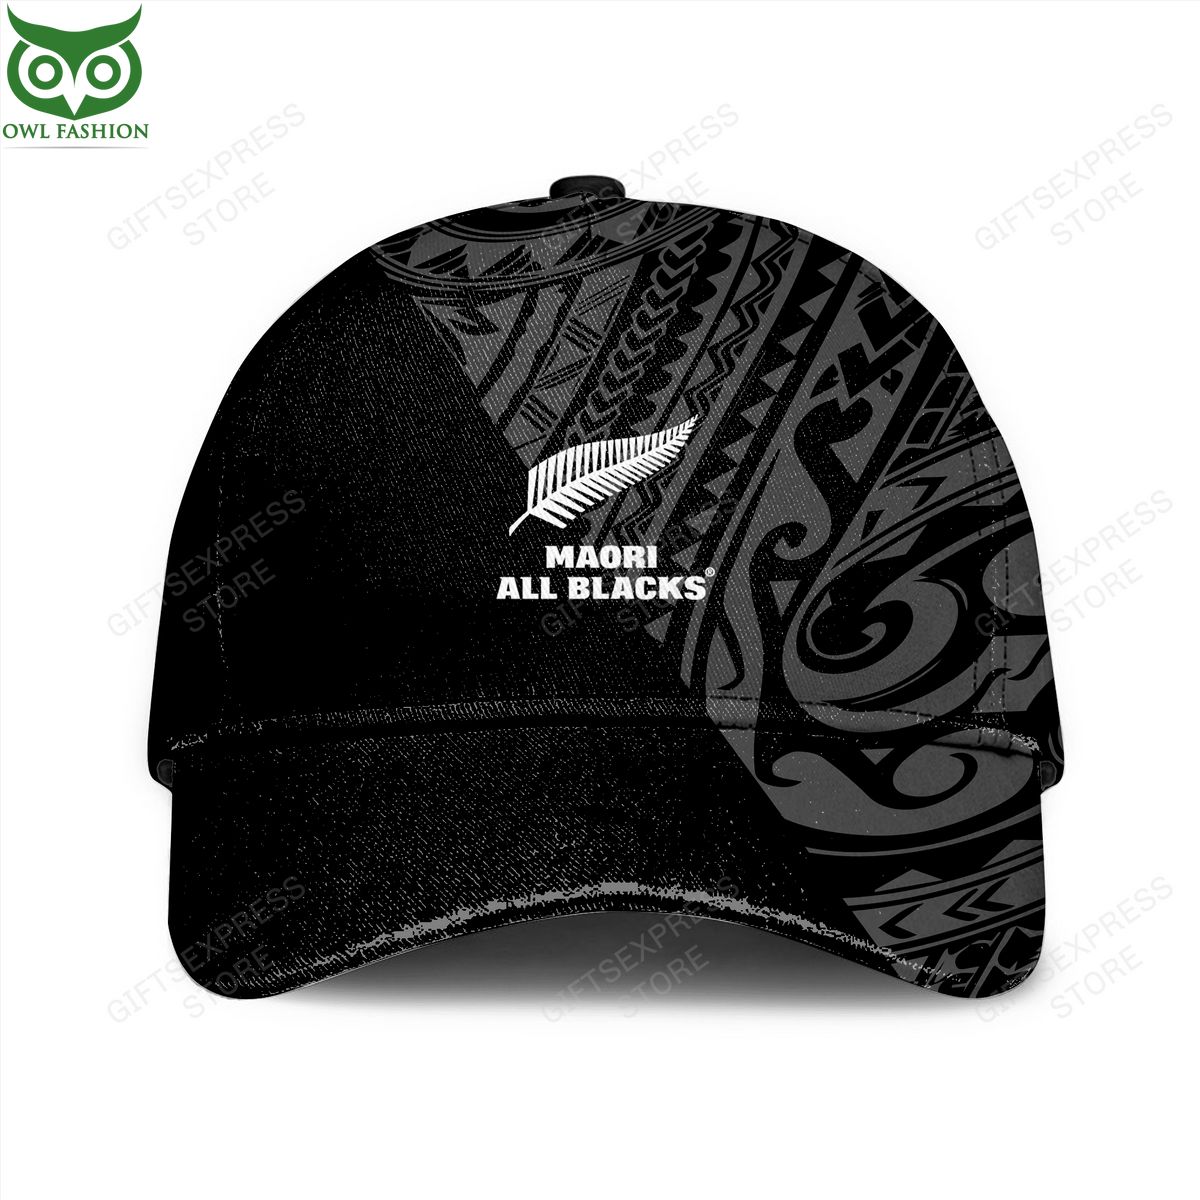 all blacks maori limited classic cap 1 Zj03r.jpg